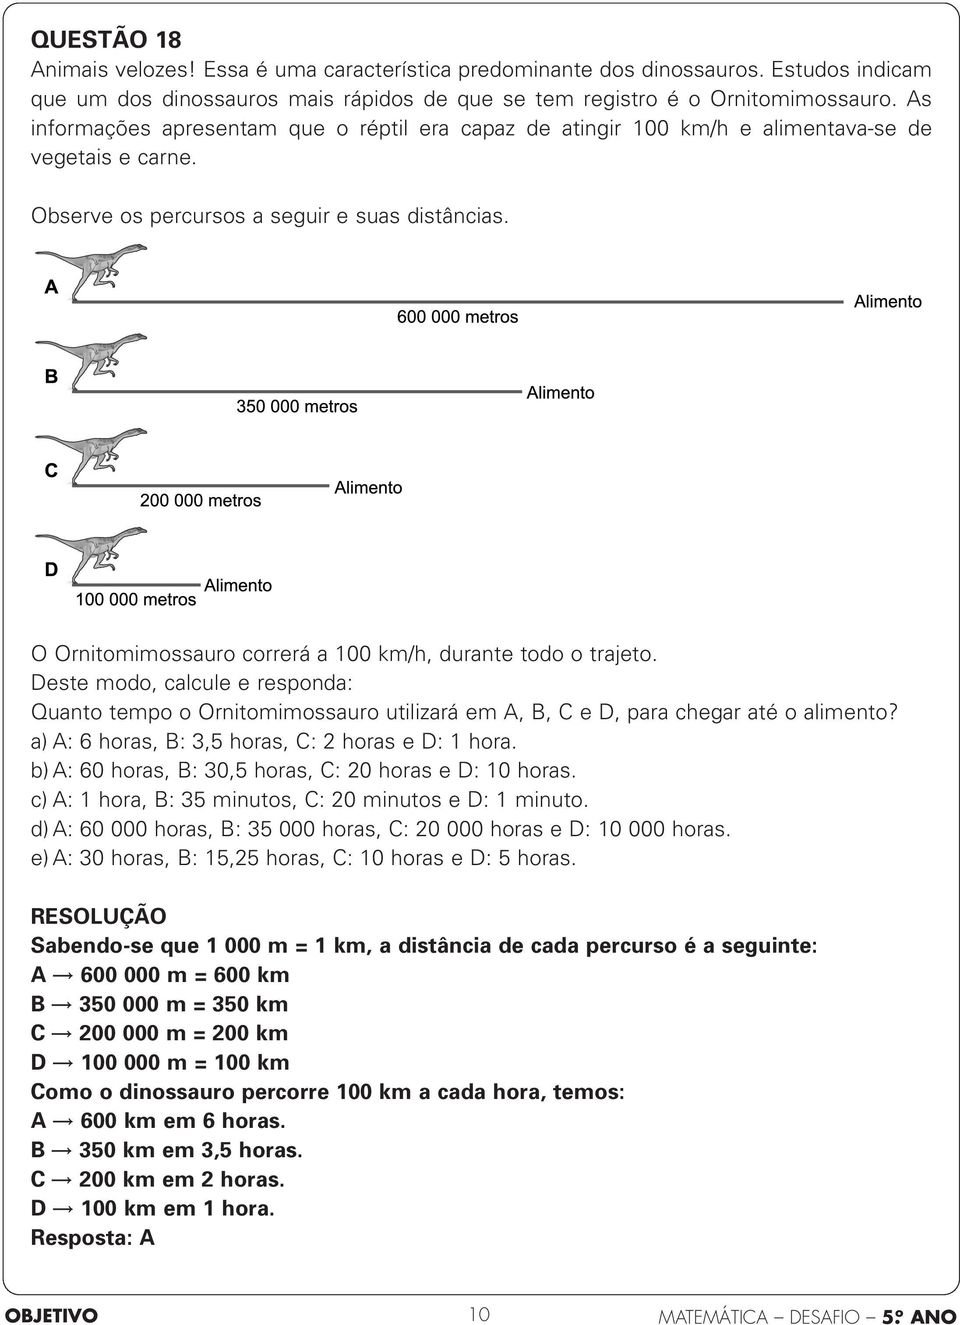 O Ornitomimossauro correrá a 00 km/h, durante todo o trajeto. Deste modo, calcule e responda: Quanto tempo o Ornitomimossauro utilizará em A, B, C e D, para chegar até o alimento?